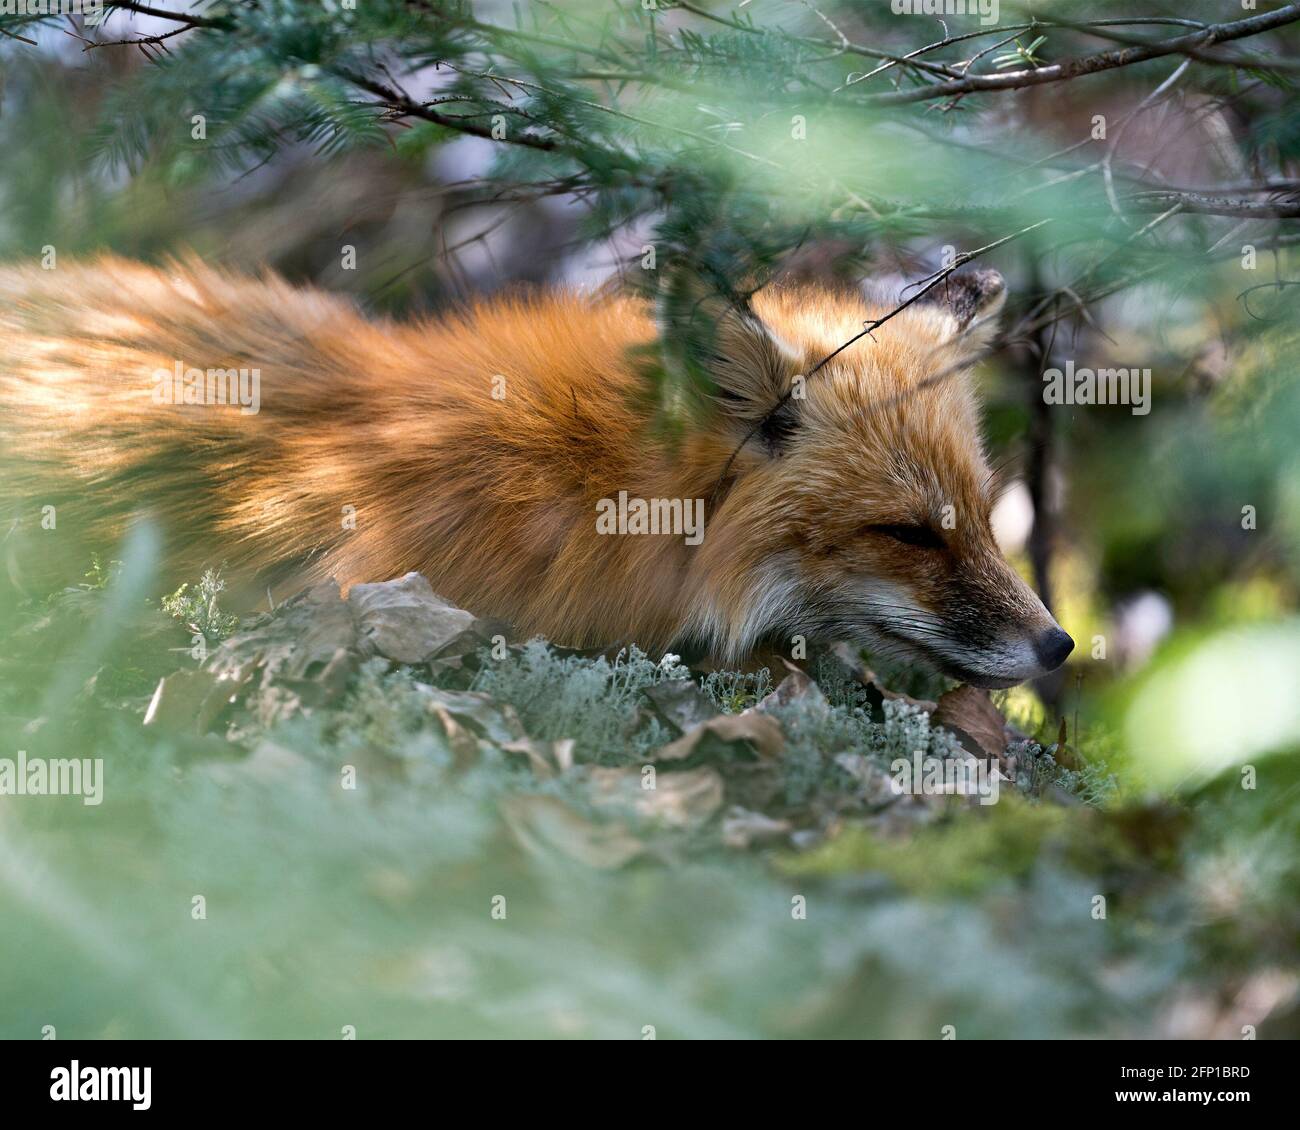 Vista ravvicinata della testa della volpe rossa attraverso rami di conifere nel suo ambiente e habitat. Immagine FOX. Immagine. Verticale. Foto. Colpo di testa. Foto Stock